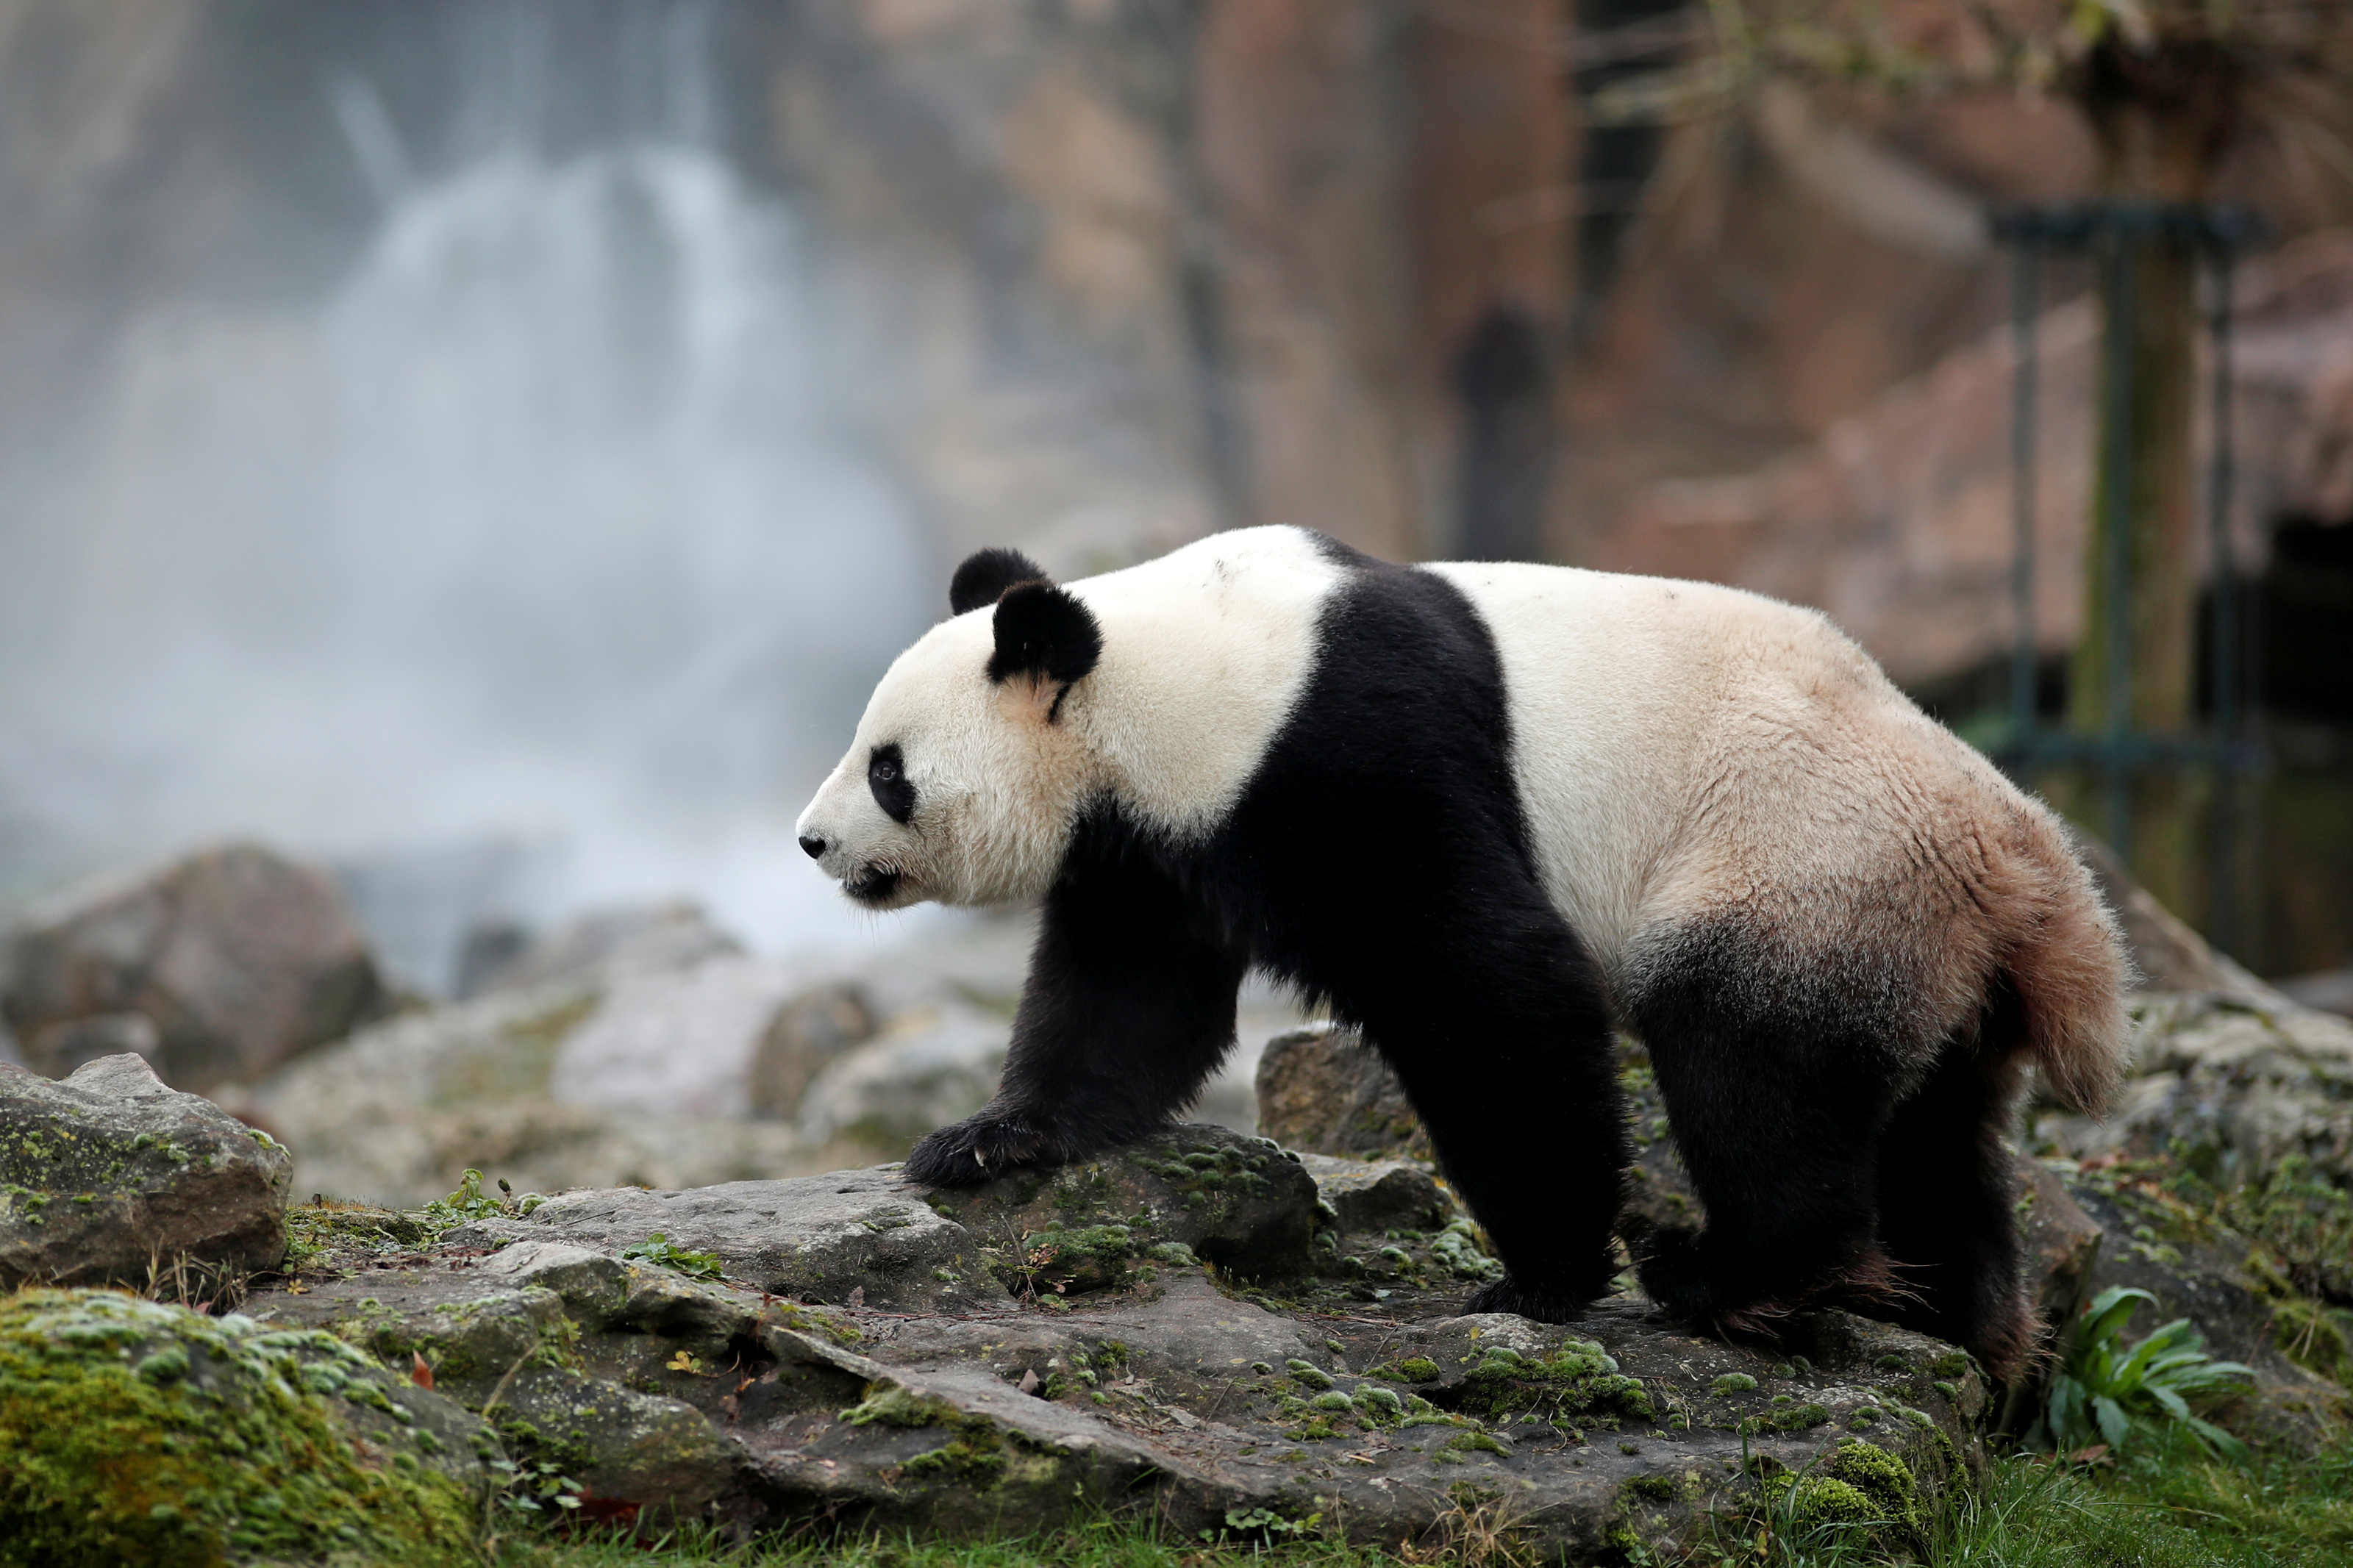 SHANGHAI, Chine (Reuters) - Le parc zoologique de Beauval, qui accueille depuis 2012 deux pandas géants chinois, souhaite une prolongation de leur prêt par Pékin au-delà des dix ans initialement prévus, a déclaré dimanche le directeur du parc français, à la veille d'une visite d'Emmanuel Macron en Chine. "J'ai fait cette demande au président (français) lorsqu'il est venu chez nous l'an dernier, il m'a promis d'en parler", a dit à des journalistes, Rodolphe Delord, membre de la délégation qui accompagnera le chef de l'Etat lors de ses trois jours de visite à Shanghai lundi et mardi puis Pékin mercredi. "On veut les garder parce que c'est un symbole extrêmement fort pour Beauval, les pandas nous permettent de sensibiliser le public à la conservation de la biodiversité, ce qui est la mission première des parcs zoologiques", a-t-il expliqué. Depuis l'arrivée en janvier 2012 du mâle Yuan Zi ("Rondouillard") et de la femelle Huan Huan ("Joyeuse"), le nombre de visiteurs dans le Zooparc de Beauval (Loir-et-Cher) est en outre passé de 600.000 à 1,6 million par an, "ce qui a permis de développer le parc, d'en faire une destination à part entière", a-t-il ajouté. Un intérêt qui s'est encore accru le 4 août 2017 avec la naissance du bébé panda Yuan Meng ("accomplissement d'un rêve") - dont Brigitte Macron est la marraine - mais qui, en tant que propriété du gouvernement chinois, repartira en Chine d'ici un an. Tous les signaux sont toutefois au vert pour la naissance d'autres bébés pandas au printemps, selon Rodolphe Delord. Au cours des dernières décennies, Pékin a prêté des dizaines de pandas - considérés comme des trésors nationaux en Chine où ils sont menacés par l'exploitation forestière et l'agriculture - aux Etats-Unis, à l'Espagne, à l'Autriche ou encore au Japon. Le prêt de Yuan Zi et de Huan Huan à la France avait à l'époque fait l'objet d'intenses tractations, débutées sous la présidence de Jacques Chirac, poursuivies puis achevées sous le quinquennat de Nicolas Sarkozy. En contrepartie, le zoo de Beauval, qui espère une prolongation de ce prêt de 10 voire de 15 ans, finance des programmes de réintroduction de pandas et de conservation des forêts en Chine - pour un montant qui avoisinerait les 800.000 euros par an. "Aujourd'hui, les choses avancent j'espère dans le bon sens, il n'y a pas de raison que les pandas ne puissent pas rester en France, les relations franco-chinoises étant excellentes et il n'y a pas de raison qu'elles se dégradent", estime Rodolphe Delord. (Marine Pennetier, édité par Benoît Van Overstraeten)